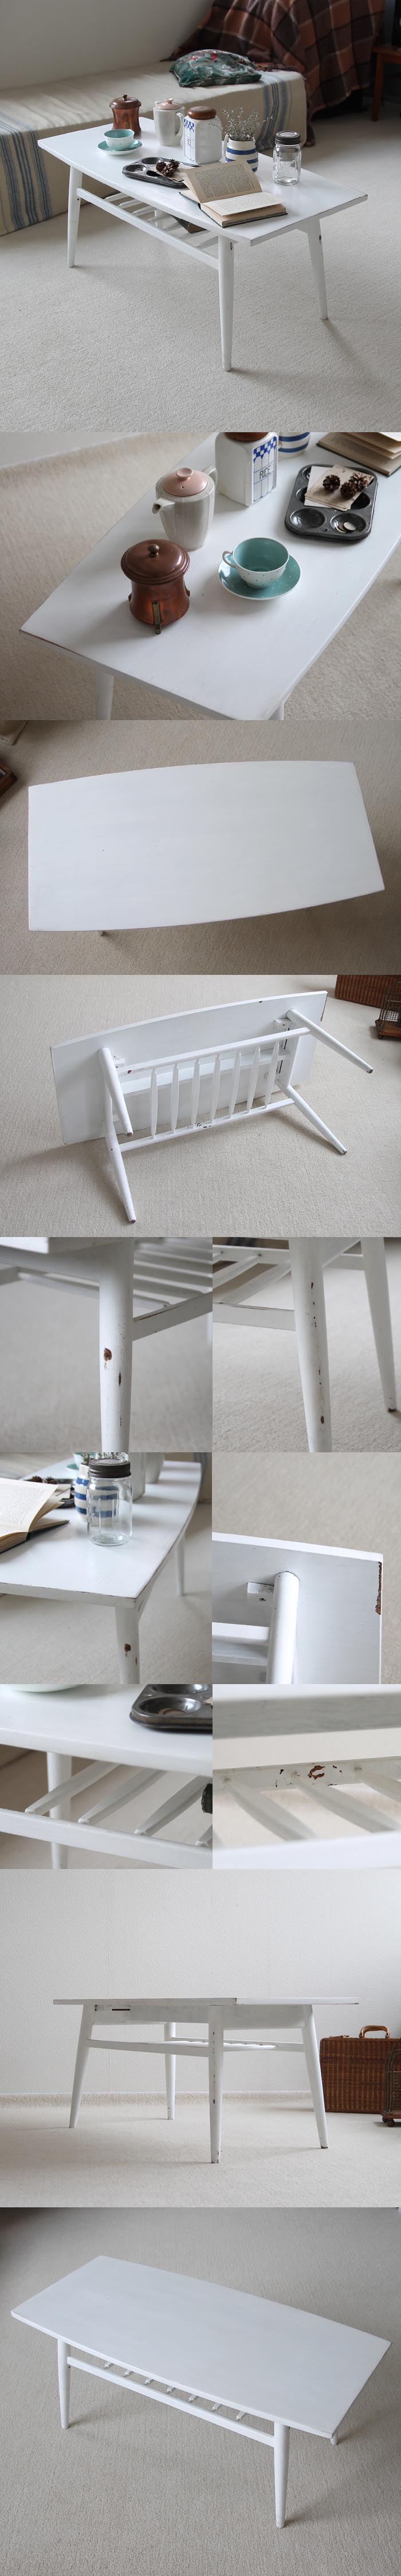 イギリス ビンテージ家具 ペイントコーヒーテーブル/ホワイト J-838